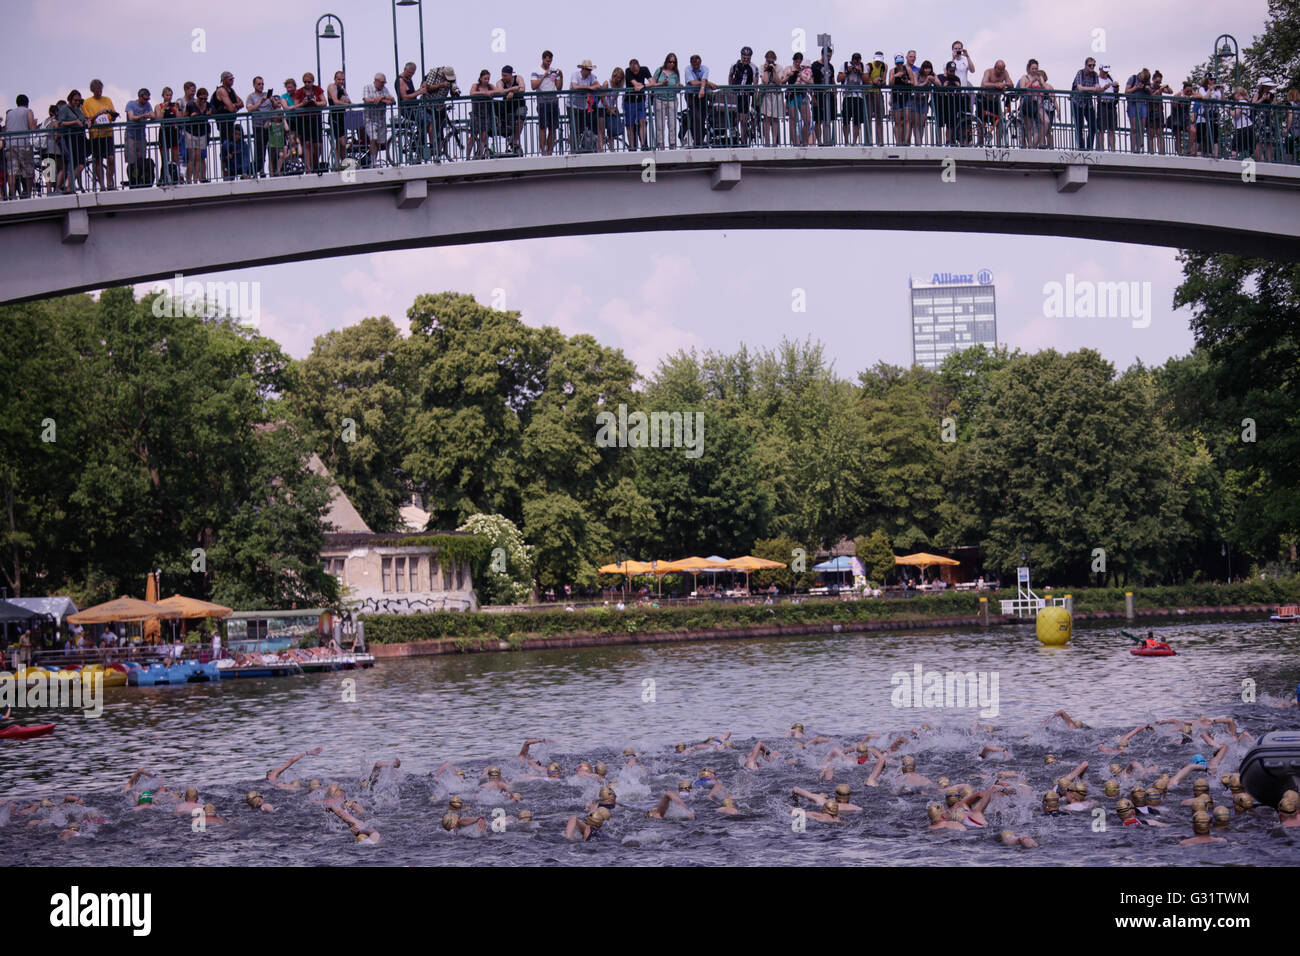 10 a edizione del Triathlon di Berlino, che inizia con la disciplin di nuoto intorno all'Isola della Gioventù in Tretowerpark. Dopo i concorrenti prende le biciclette e avviare il 38 chilometro corso in bicicletta che corre lungo la Plänterwald . Quindi essi corrono 10,25 km. Altre categorie hanno distanze più brevi. Foto Stock